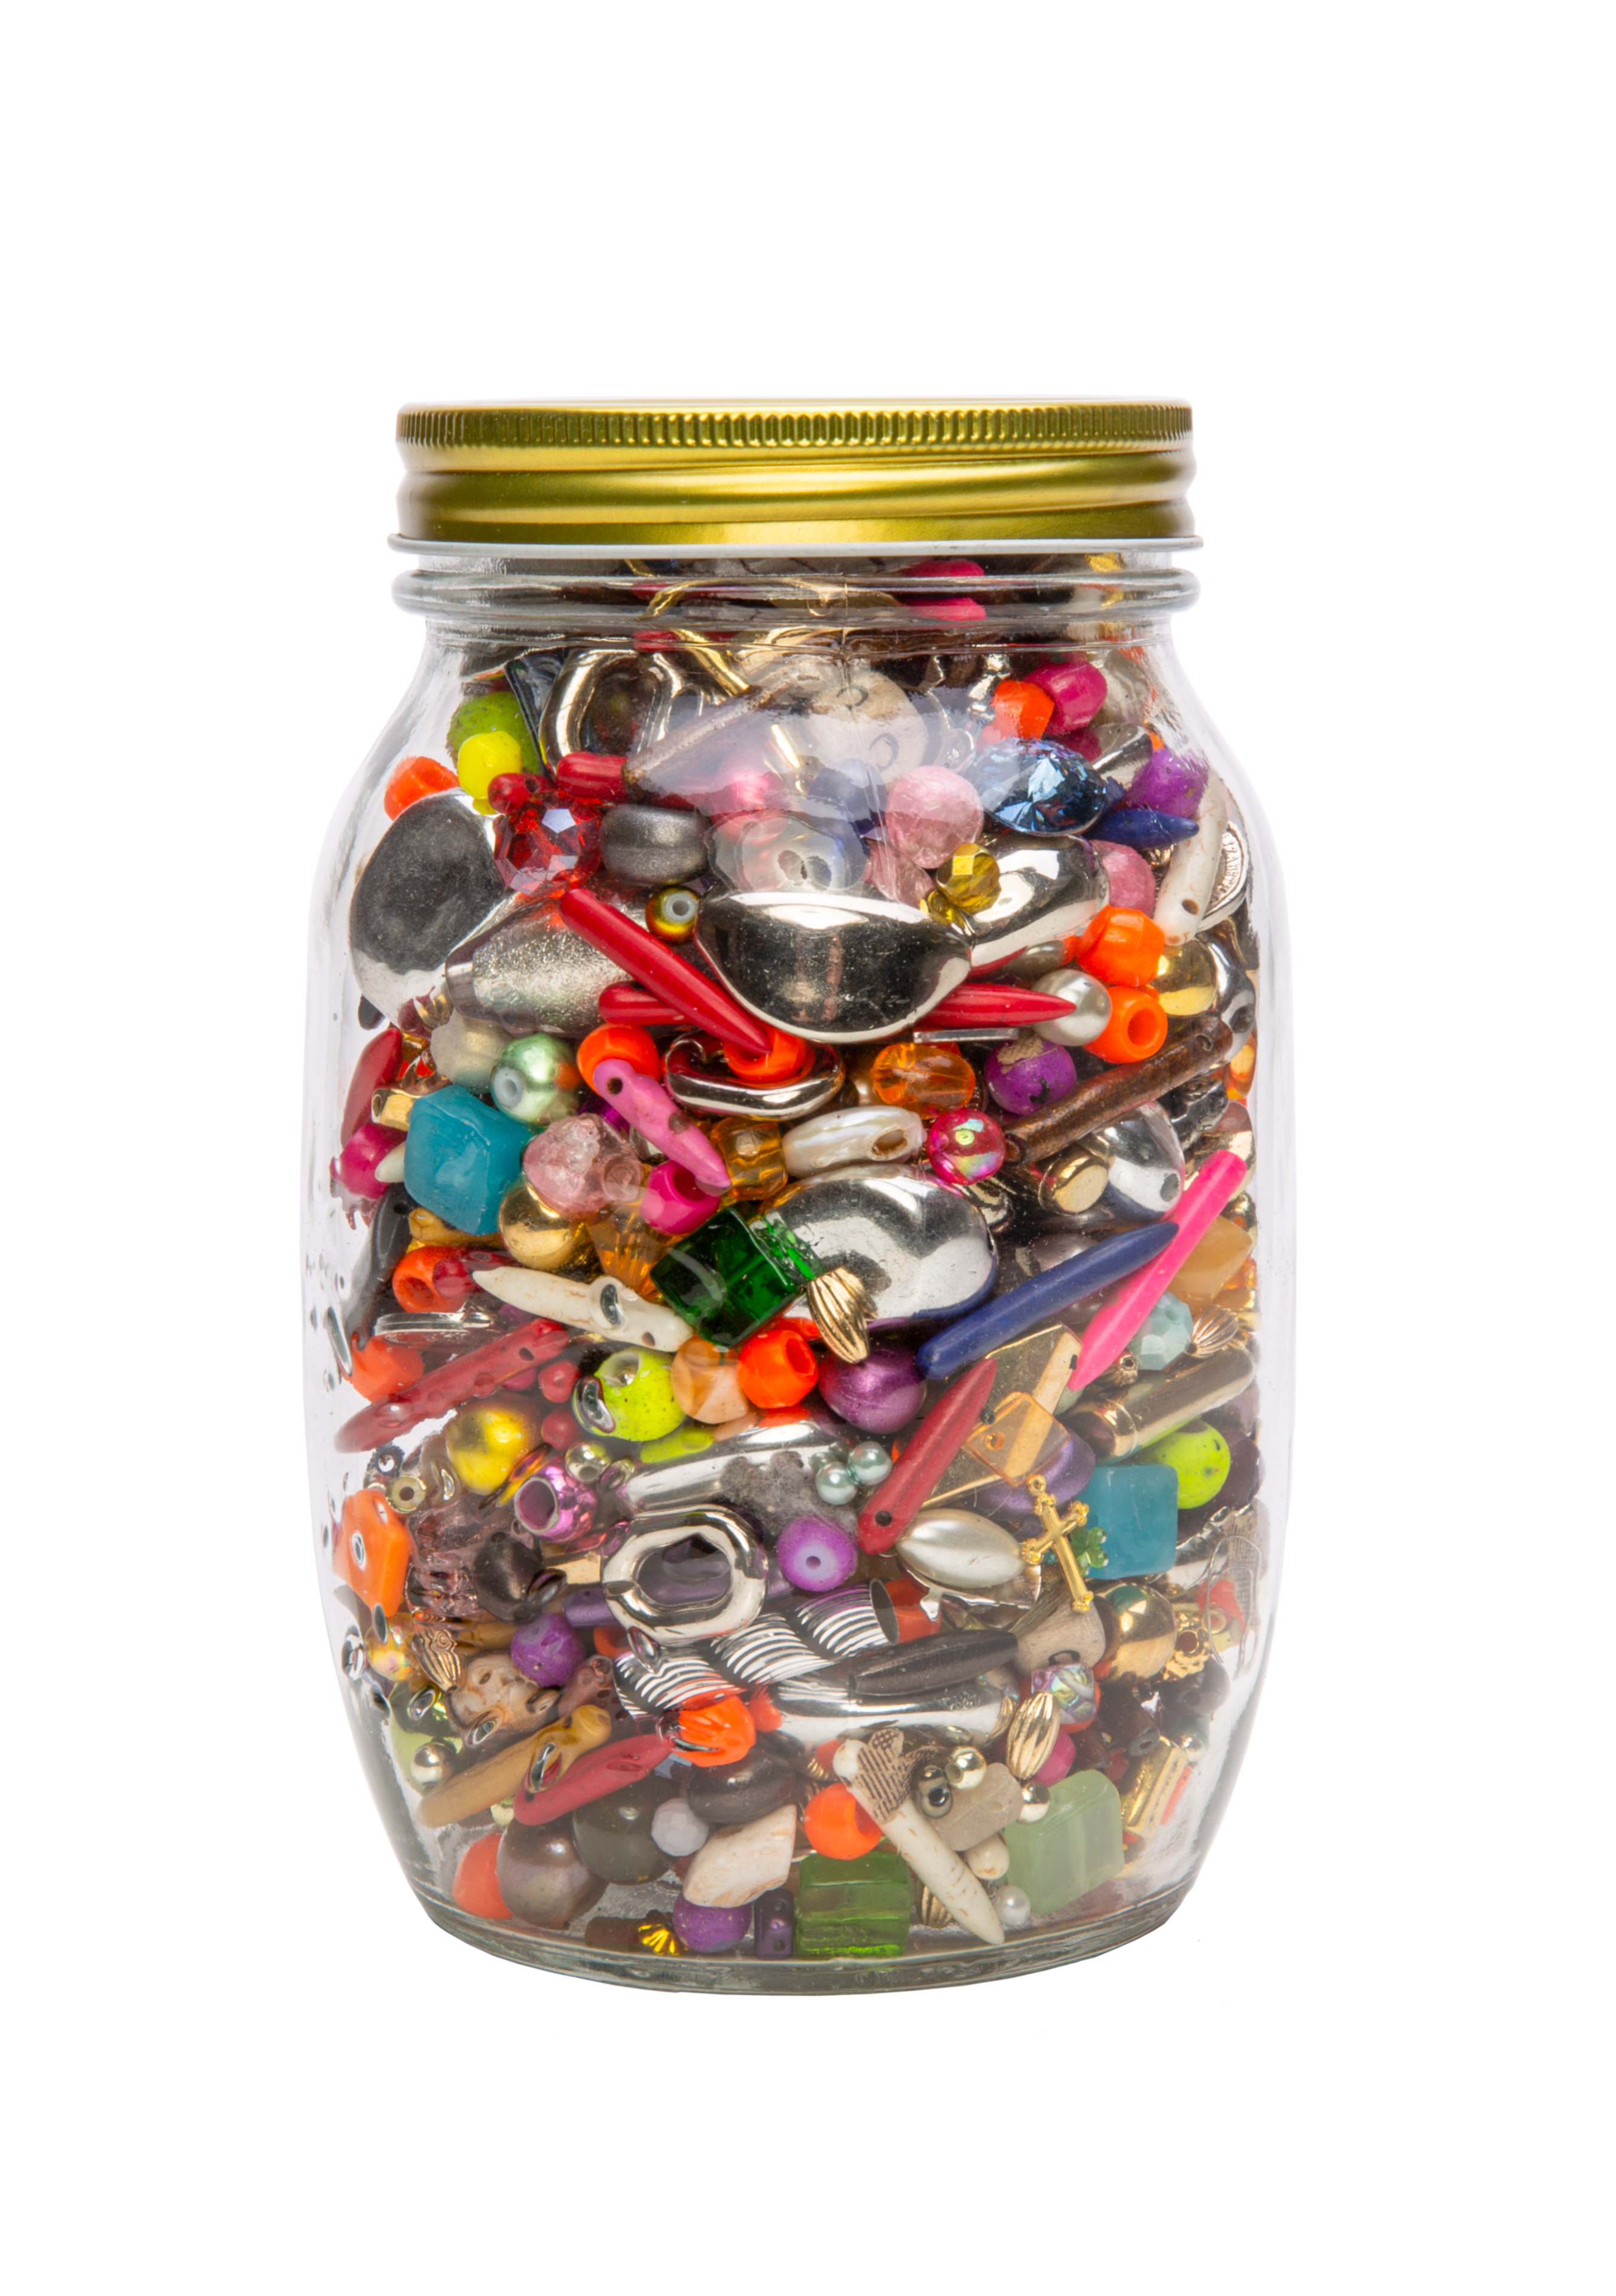 1 Liter Glas voller Perlen, gemischtes Material und Größen